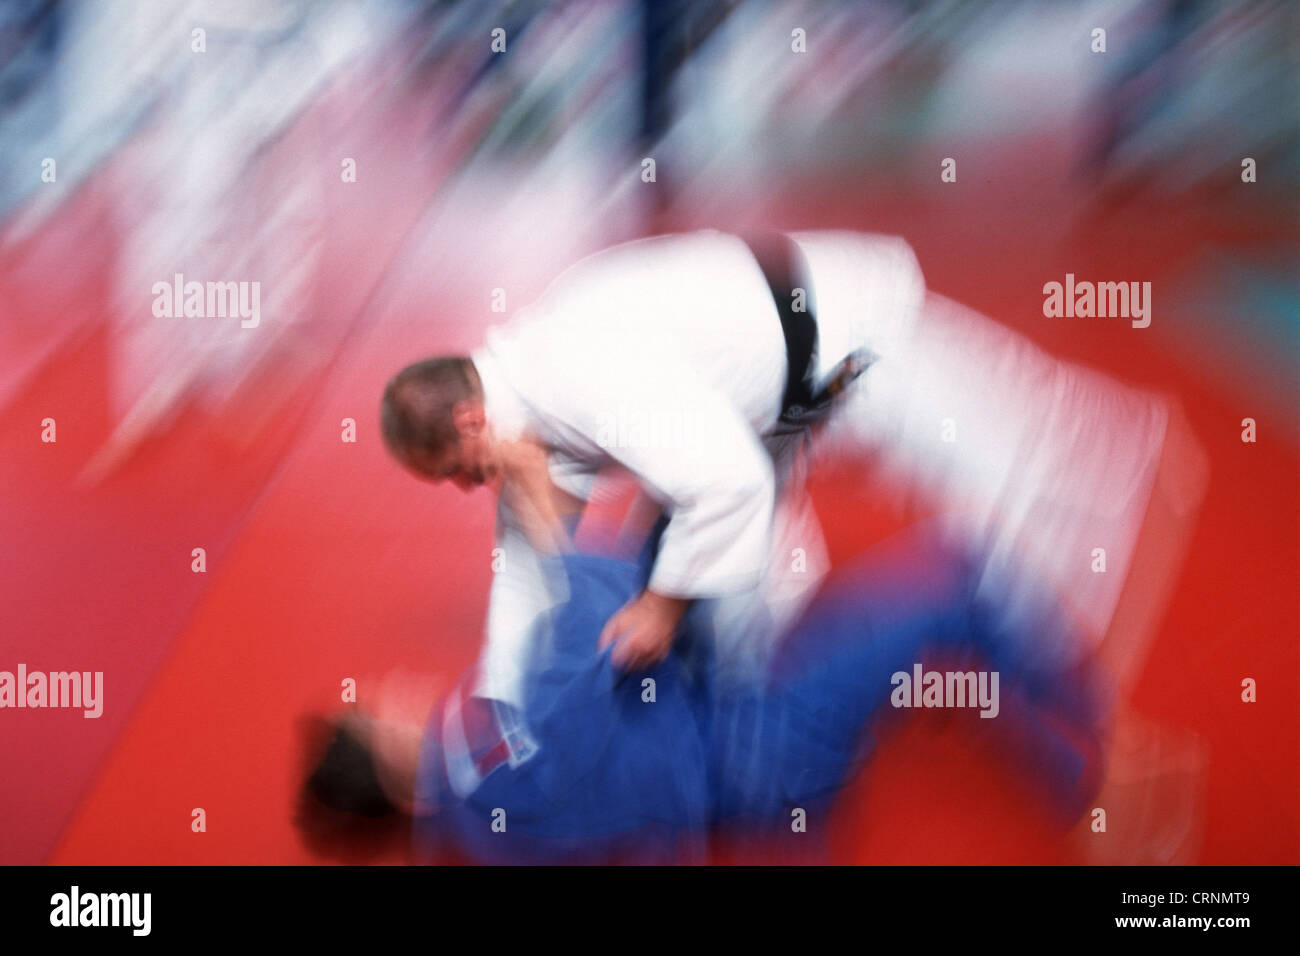 Formación del Equipo Nacional de Judo austriaco de muestra Foto de stock